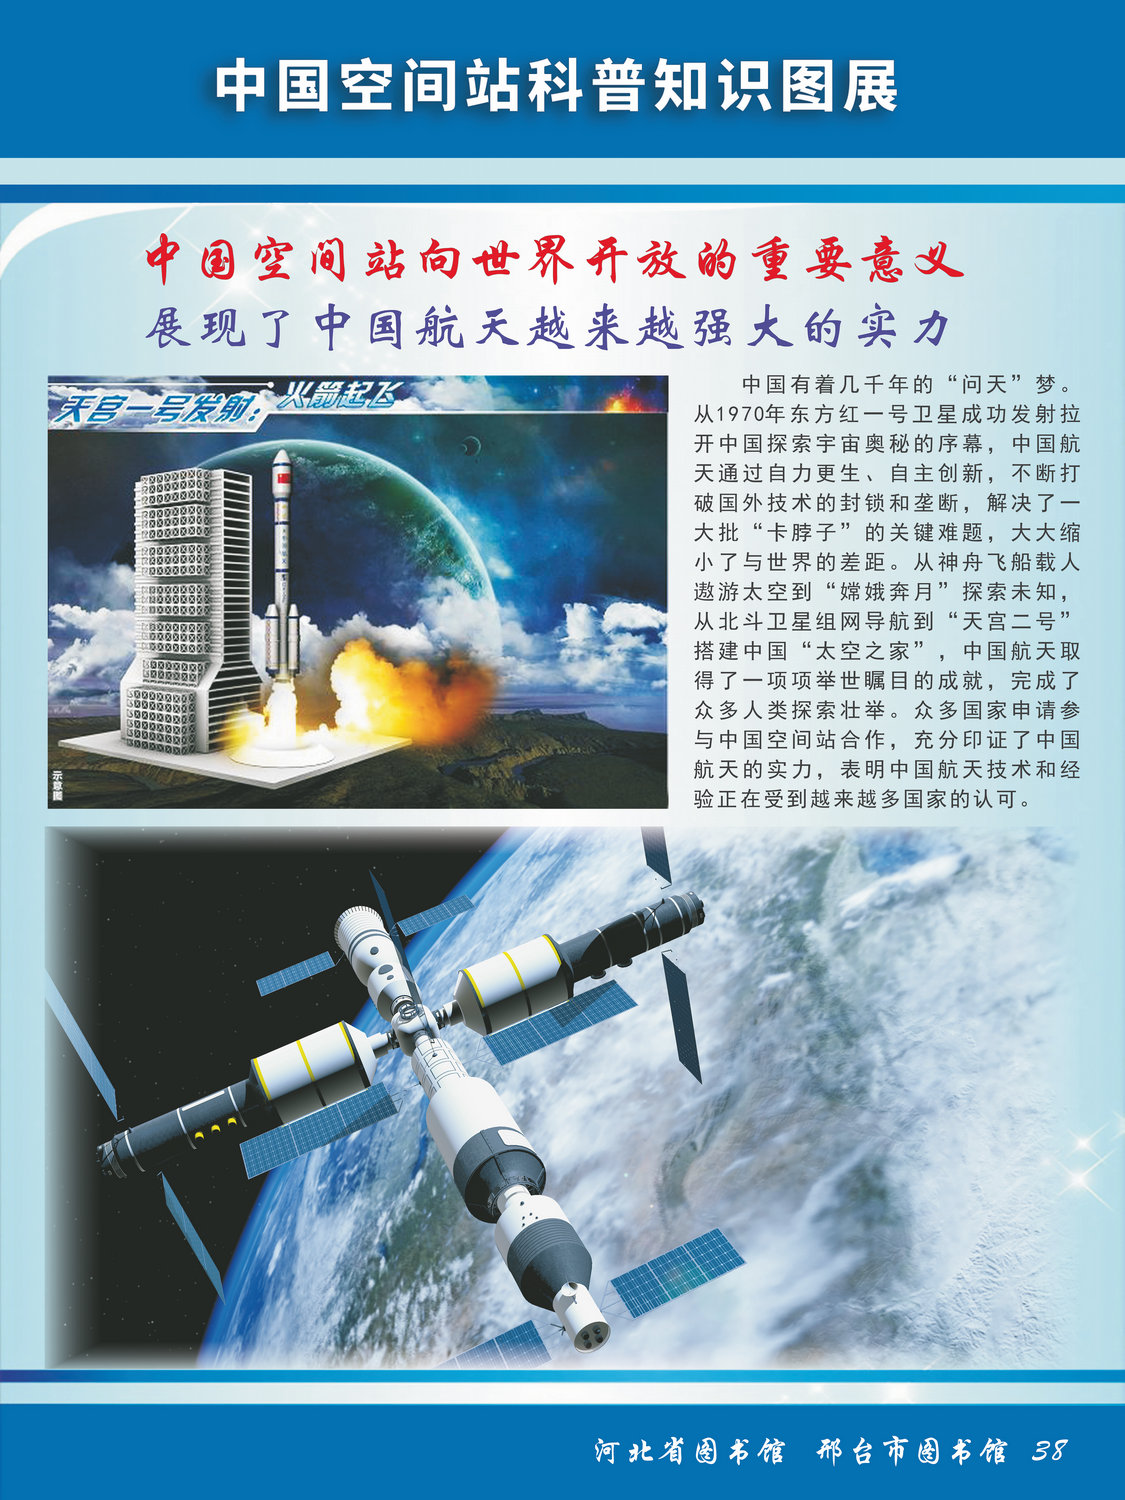 中国空间站科普知识图文展_图38